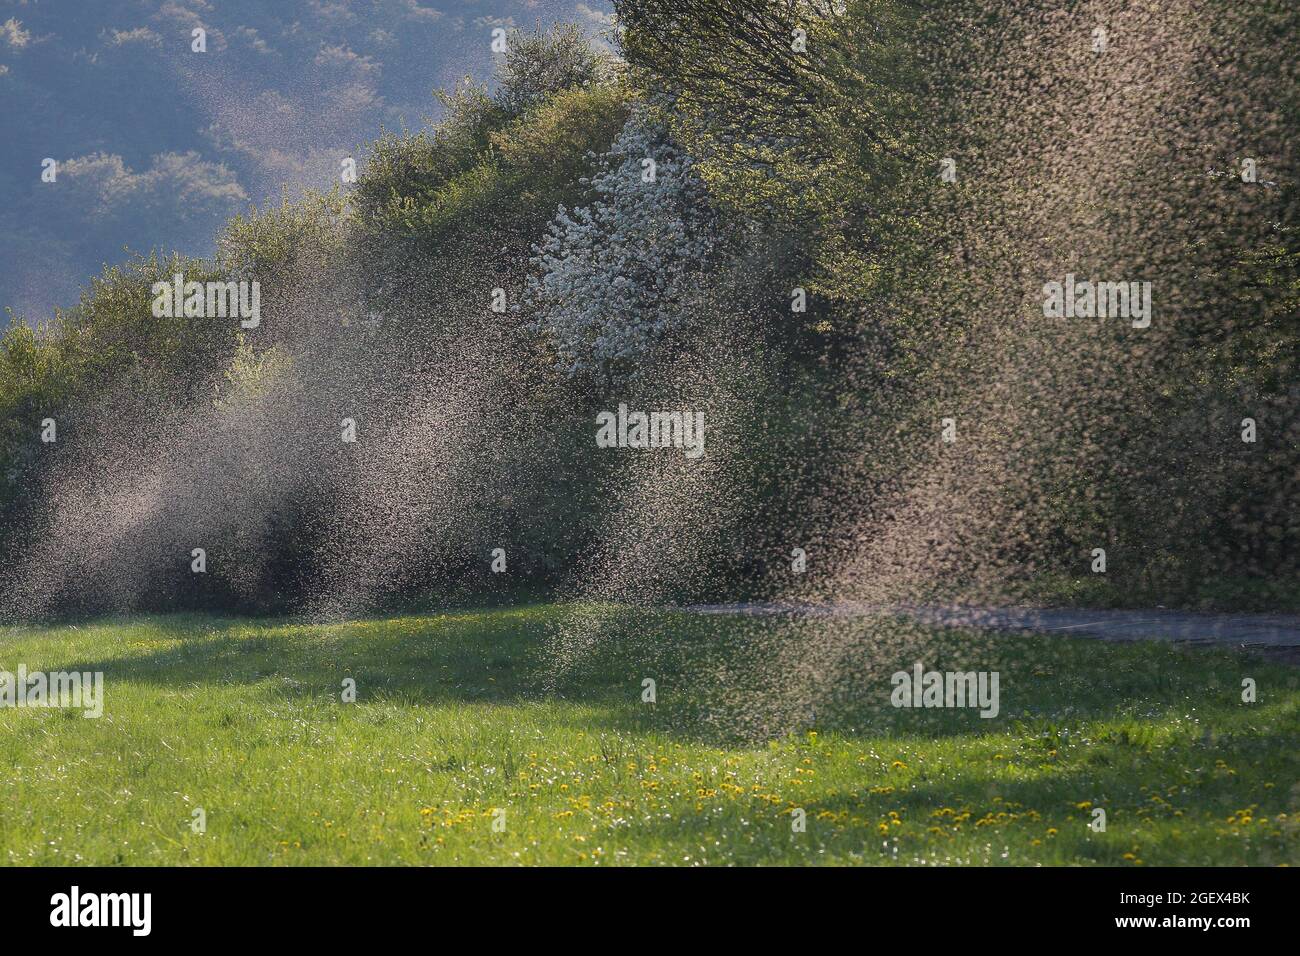 Große Schwärme von Fliegen oder Mücken tanzen abends auf einer grünen, feuchten Wiese Sonnenstrahlen. Stockfoto